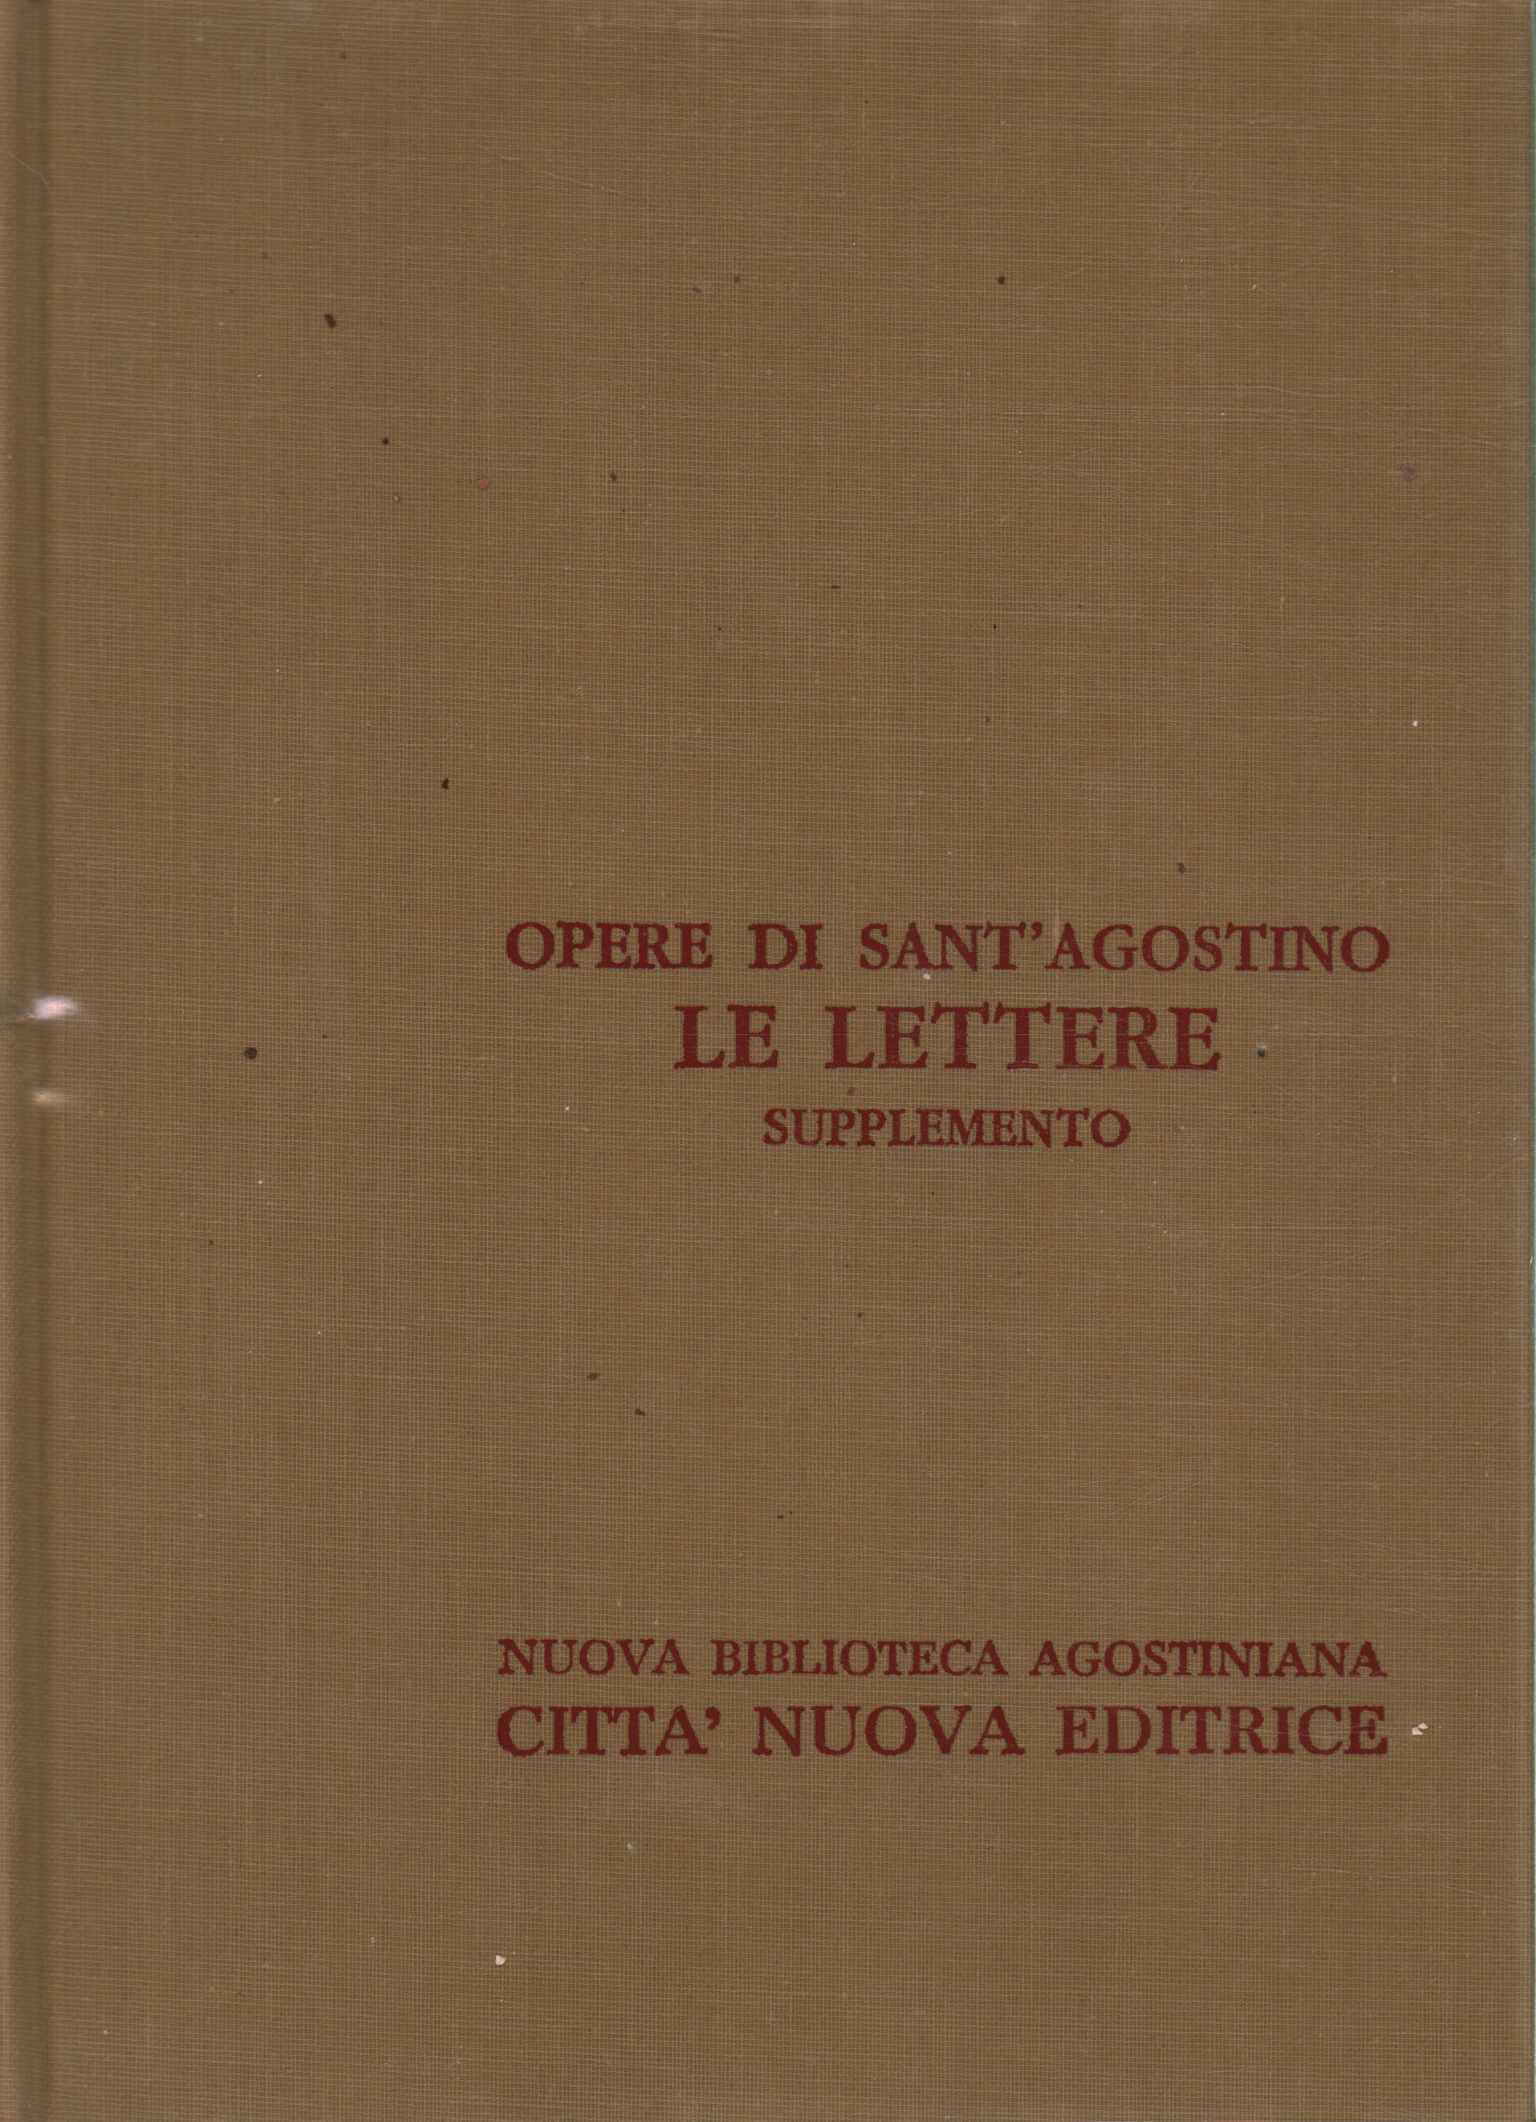 Works of Sant'Agostino XXIII/A.%2,Works of Sant'Agostino XXIII/A.%2